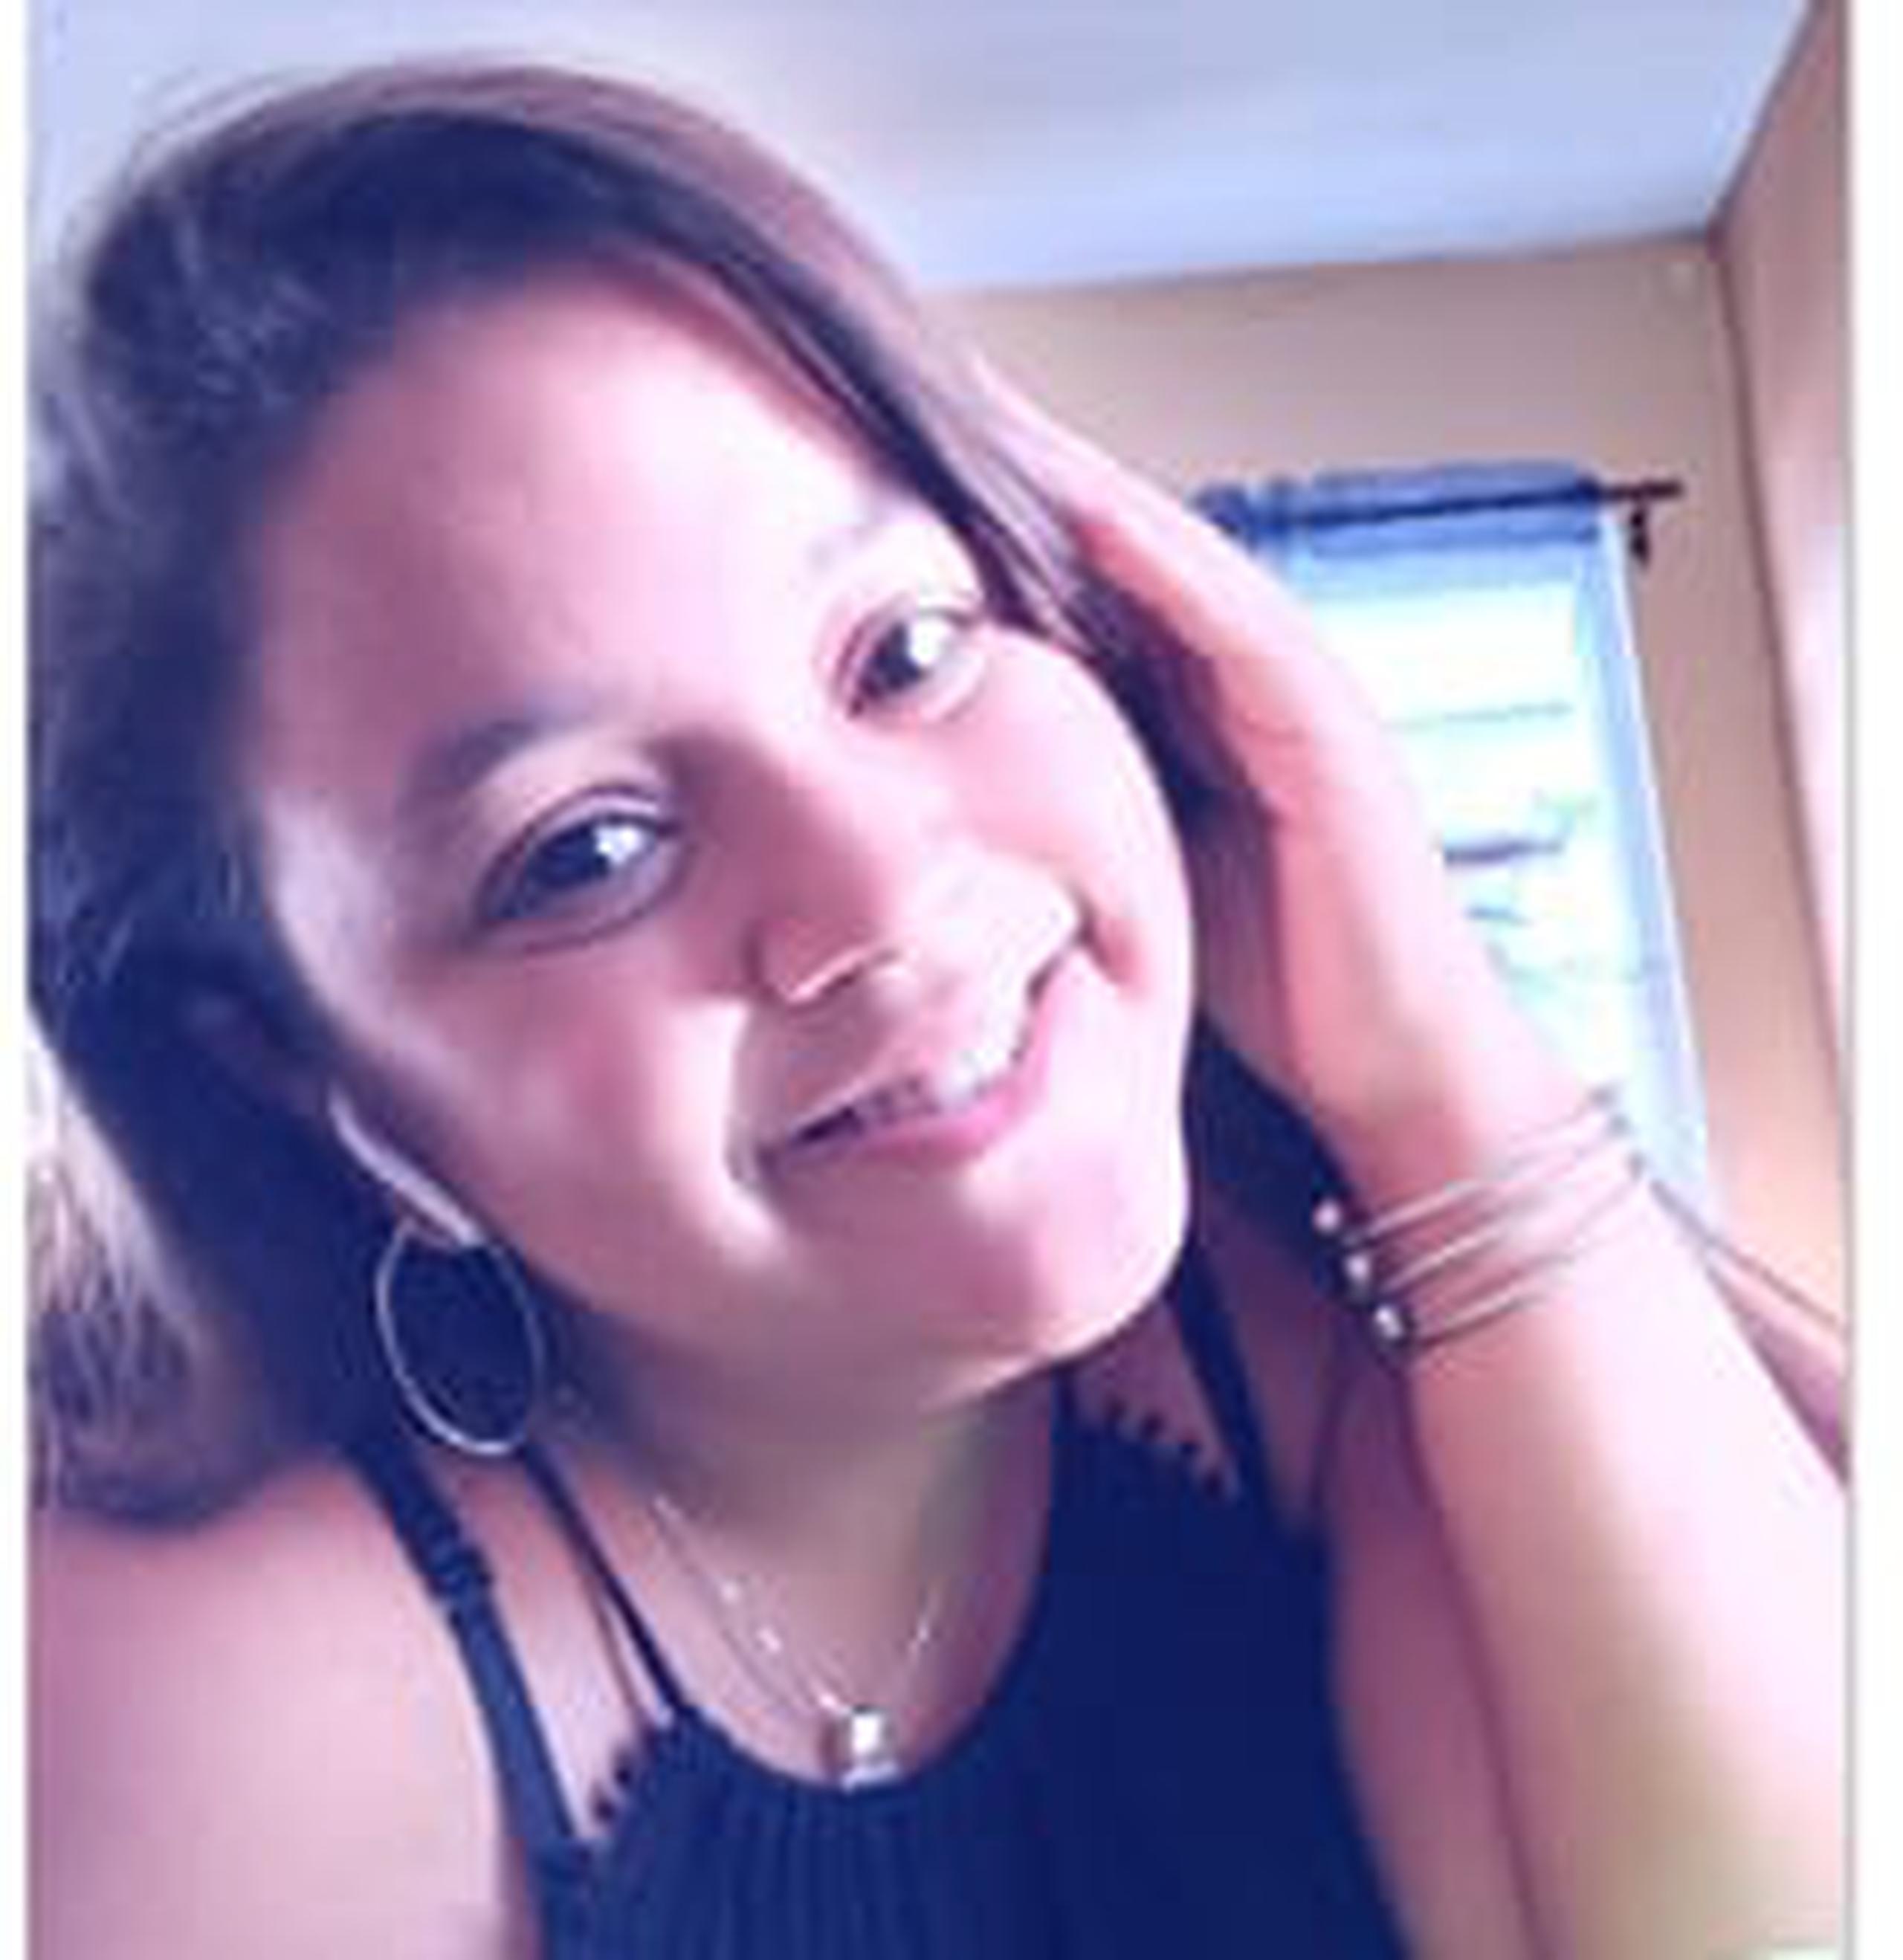 Kelaya Figueroa Robles, de 17 años, fue reportada desaparecida por su progenitora, quien notificó que a eso de las 6:00 p.m. su hija salió de su residencia en el barrio Dominguito, en Arecibo, en un automóvil color gris.